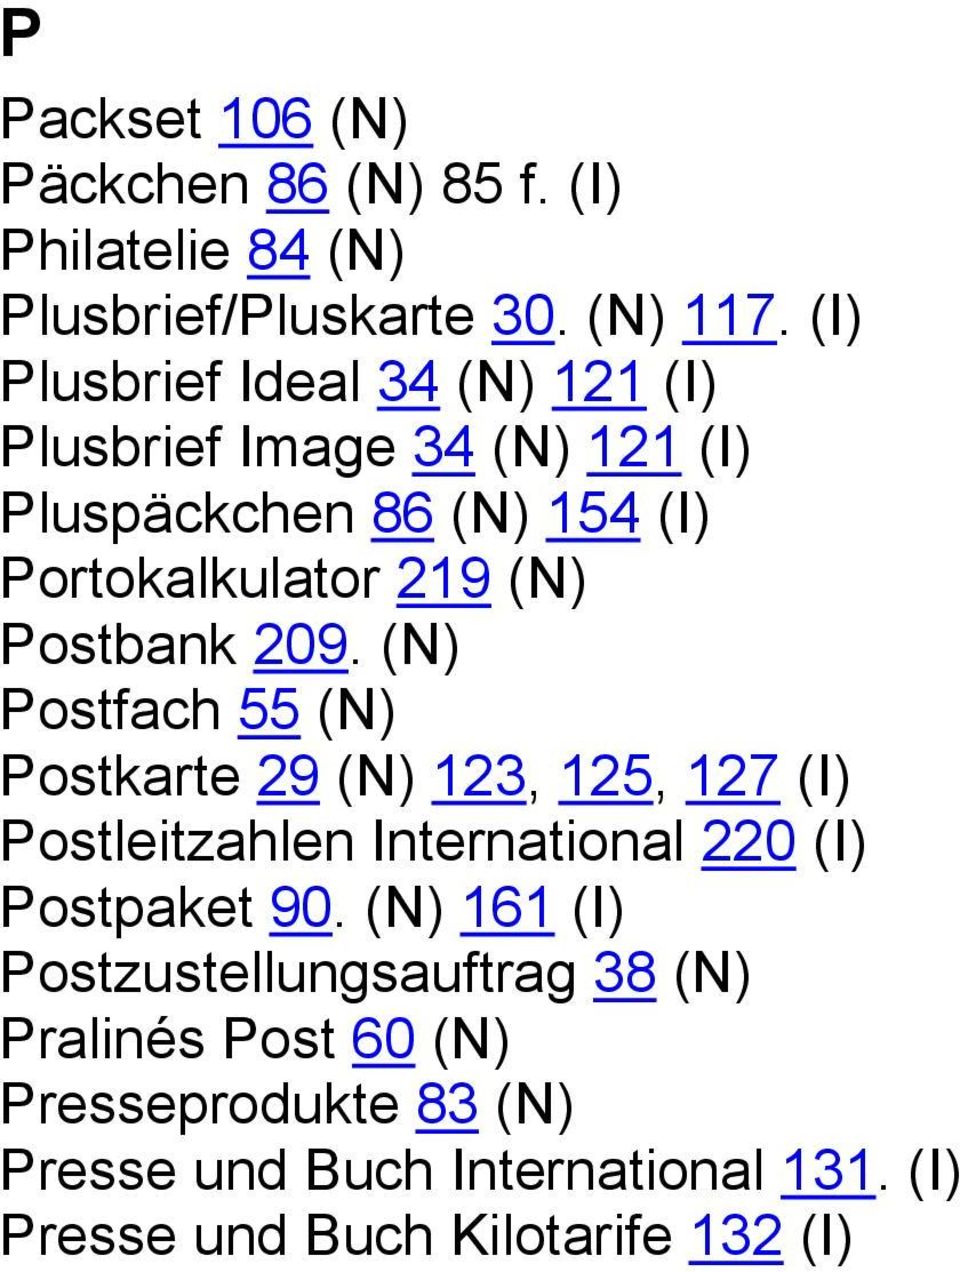 Postbank 209. (N) Postfach 55 (N) Postkarte 29 (N) 123, 125, 127 (I) Postleitzahlen International 220 (I) Postpaket 90.